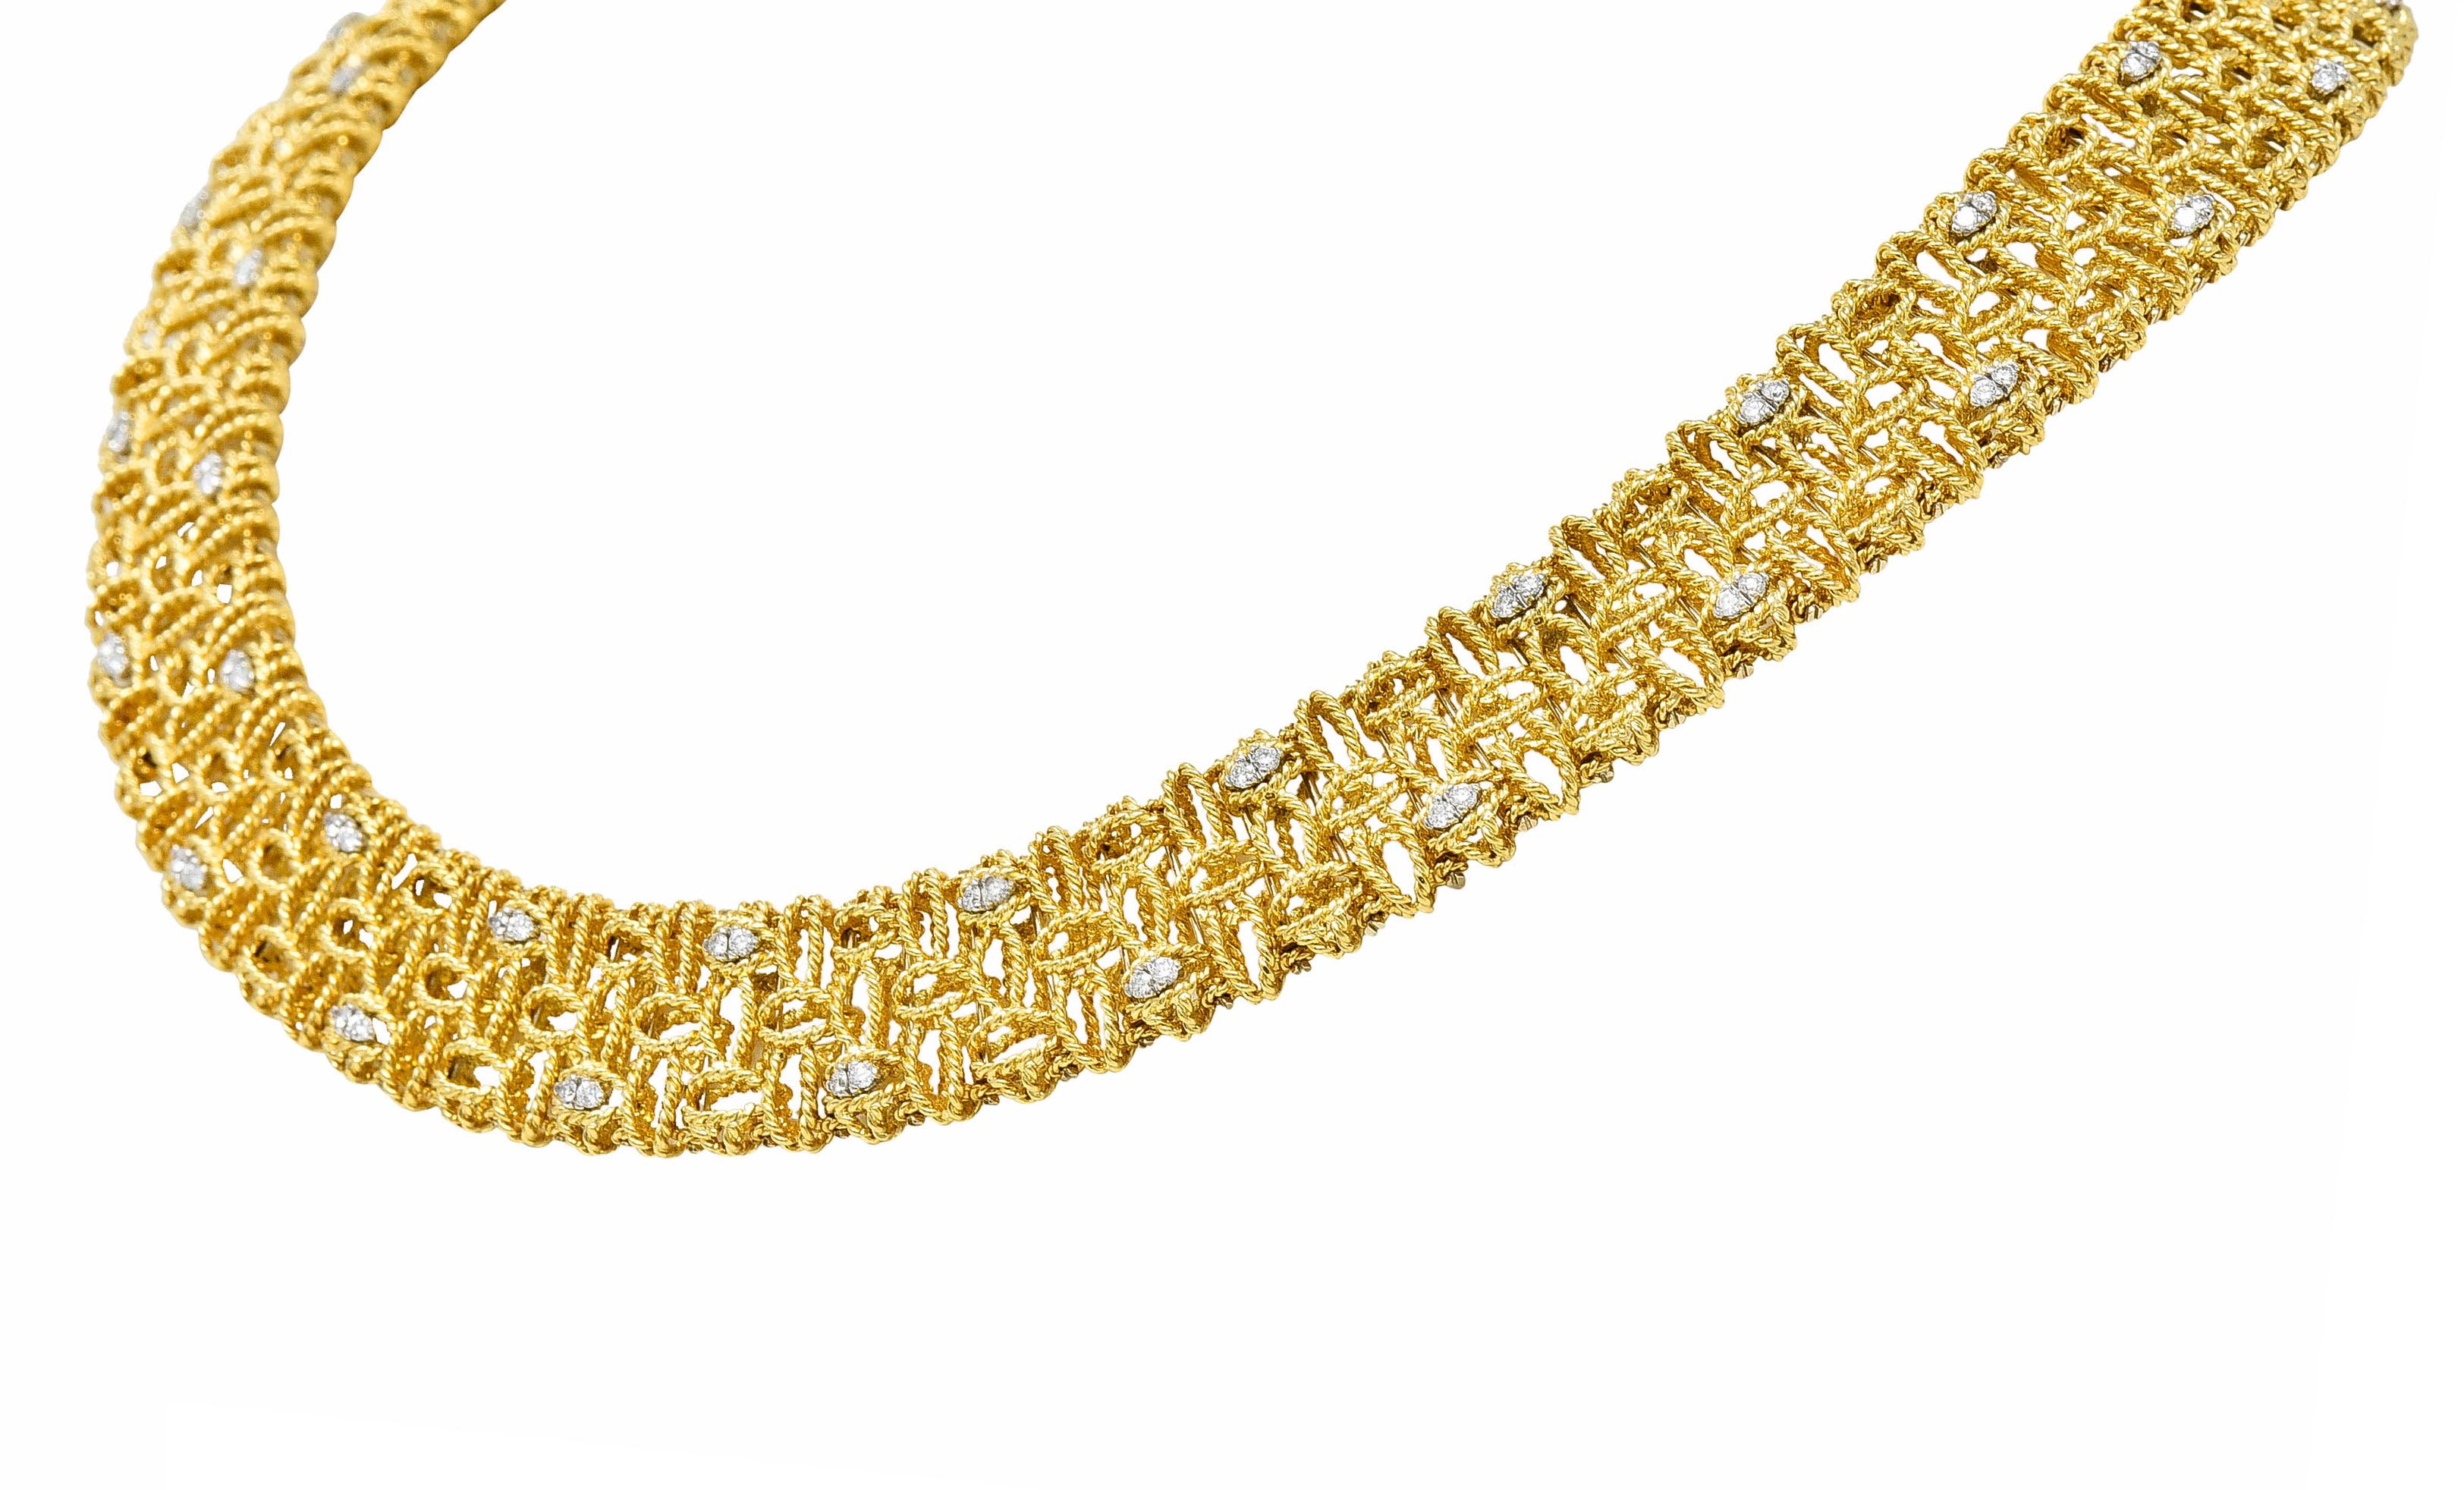 Brilliant Cut Robert Coin Diamond 18 Karat Yellow Gold Petals Collar Necklace